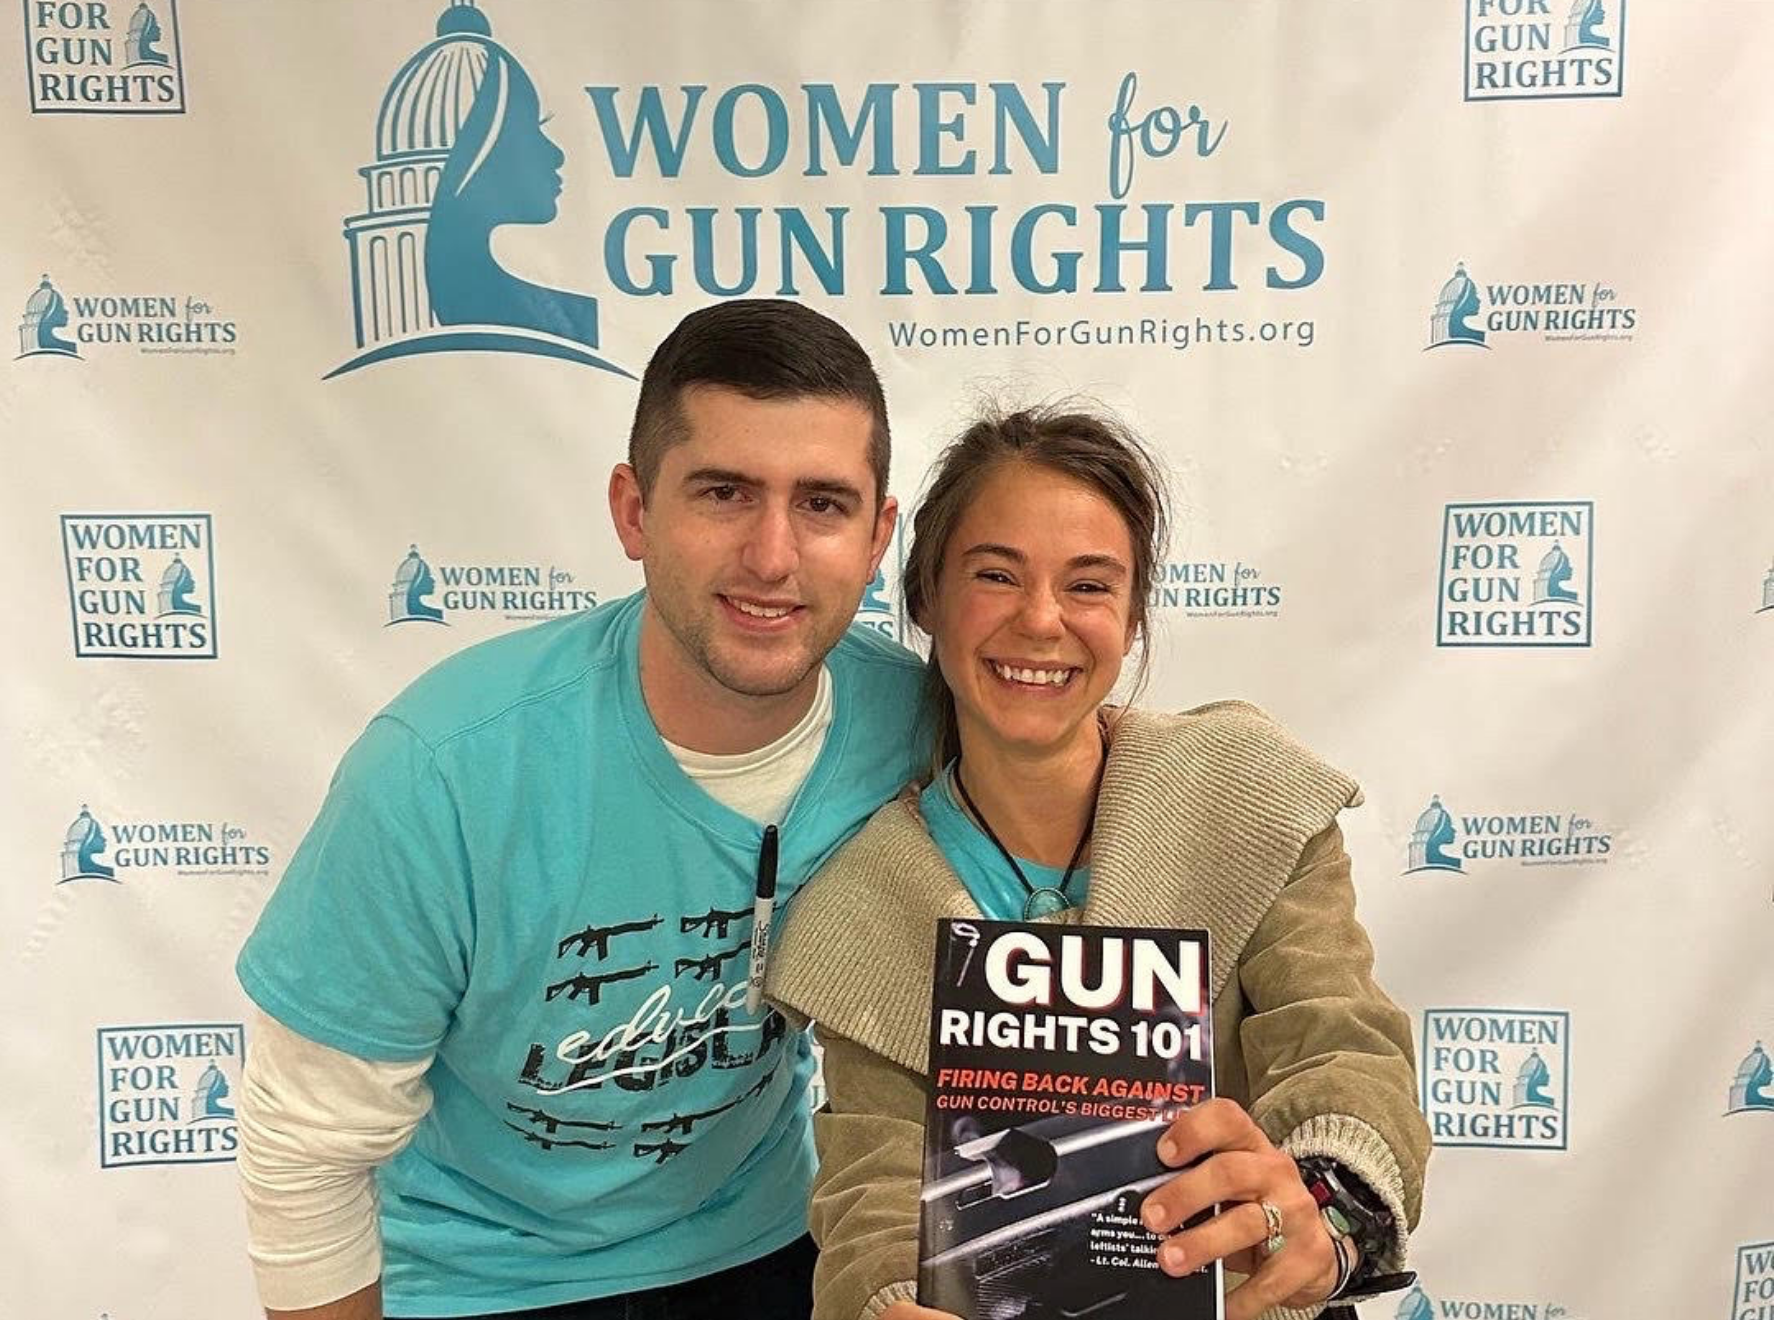 Women for Gun Rights